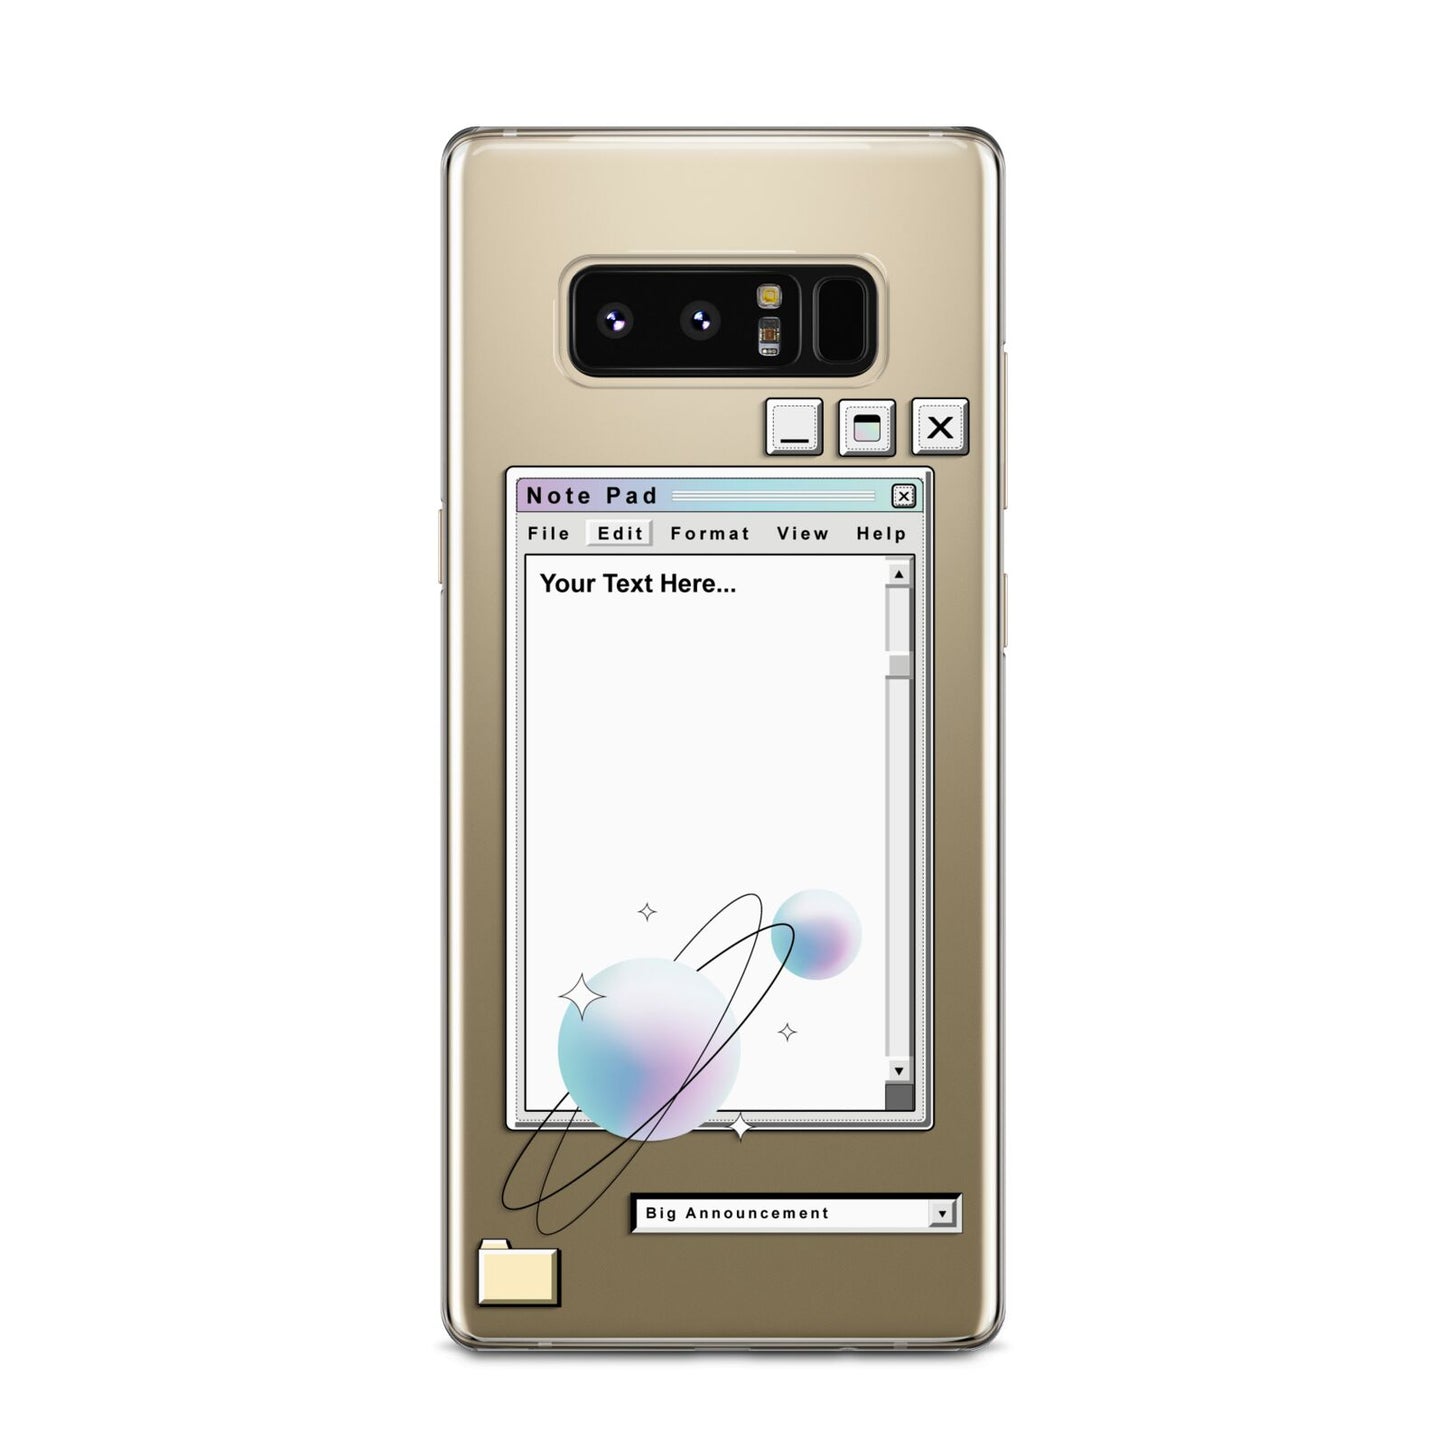 Retro Note Pad Samsung Galaxy Note 8 Case